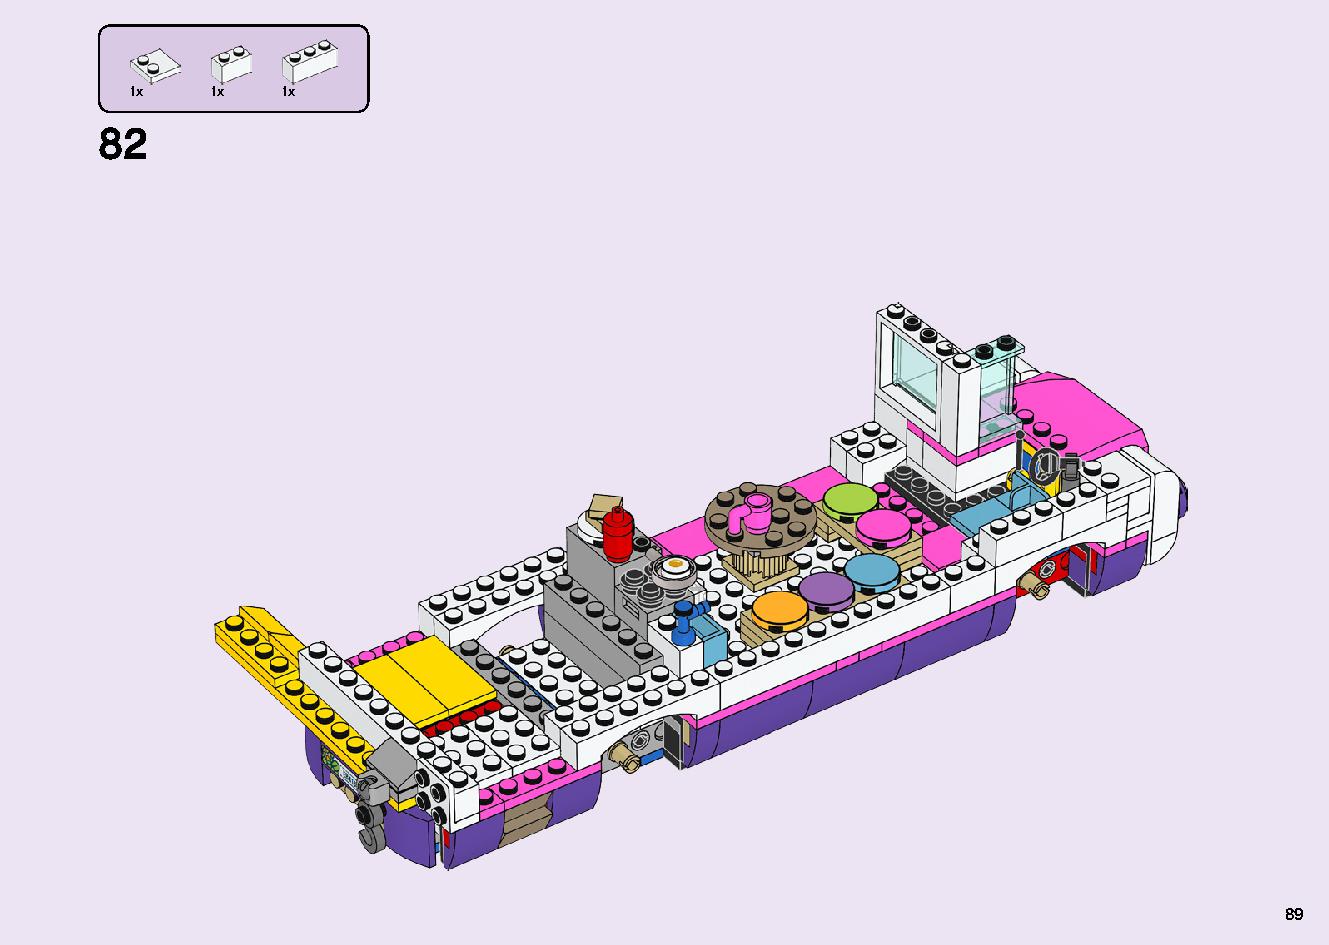 フレンズのうきうきハッピー・バス 41395 レゴの商品情報 レゴの説明書・組立方法 89 page